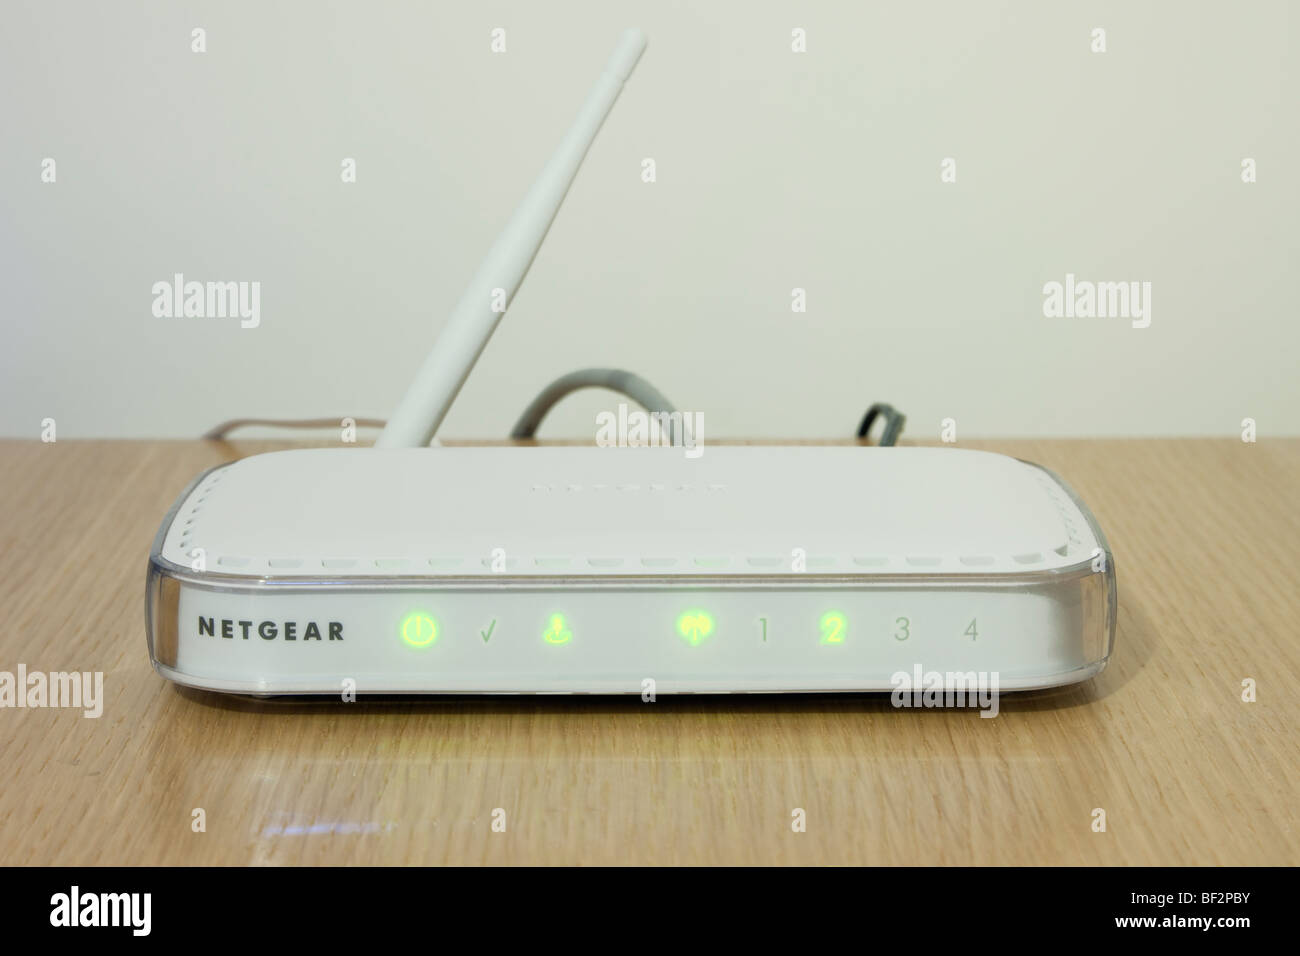 Router de banda ancha inalámbrico Netgear módem encendido para ir en línea. Inglaterra Gran Bretaña Foto de stock